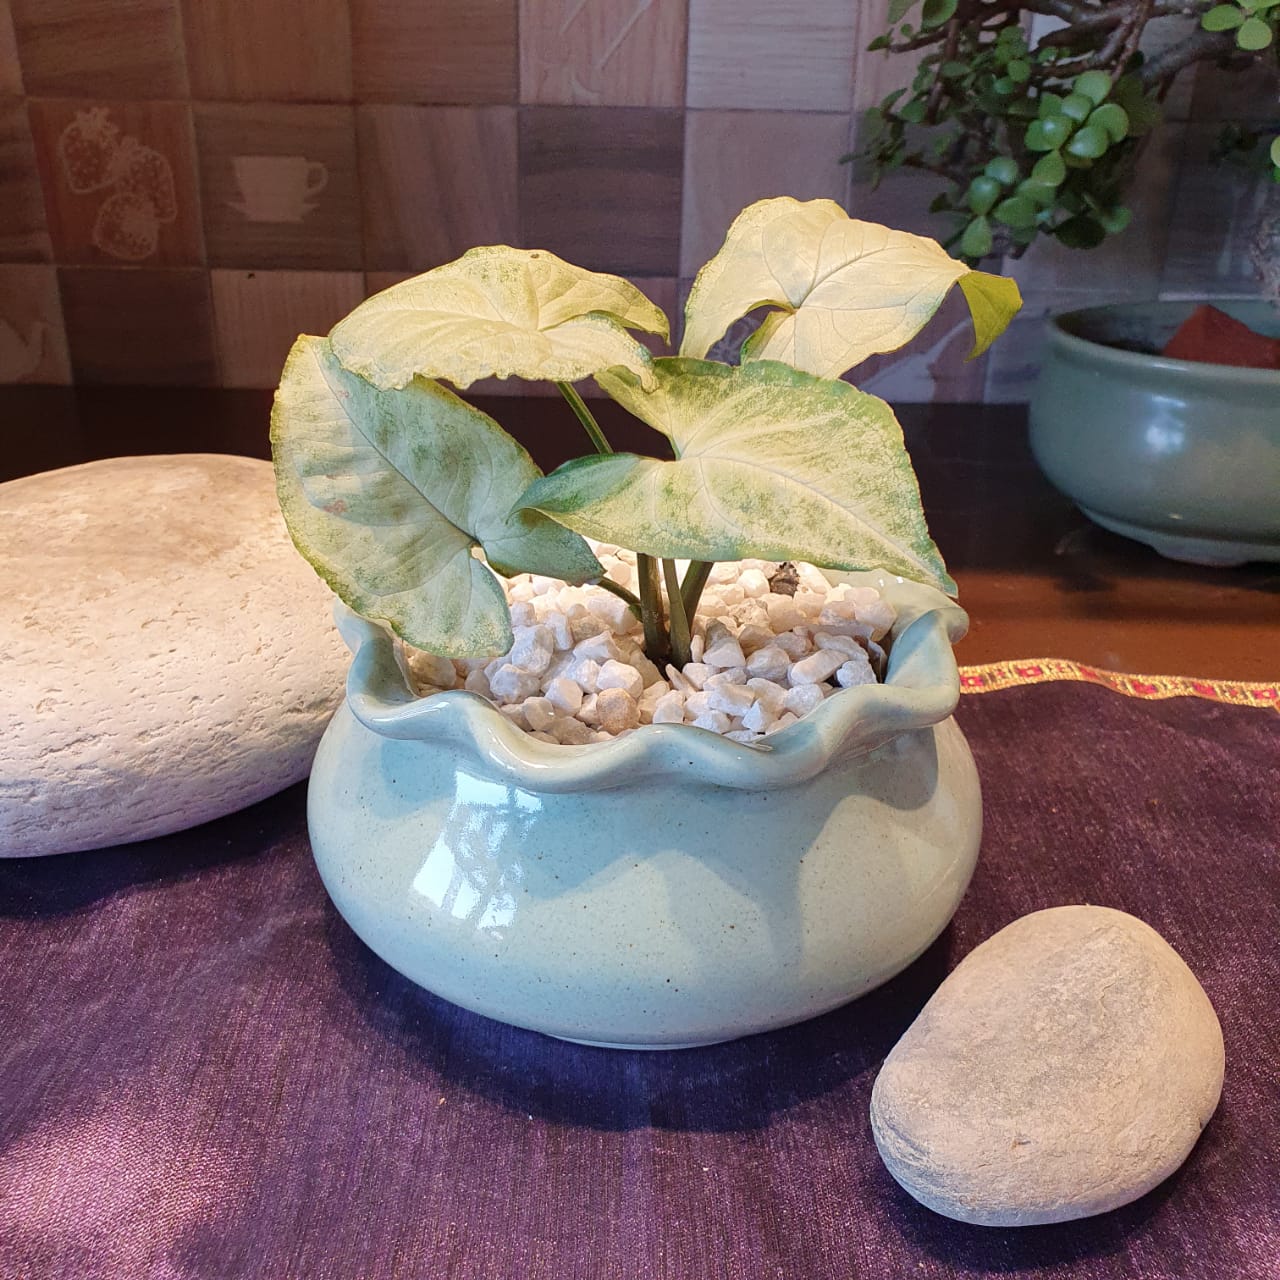 Elegant Floral Round Ceramic Planter, Outdoor and Indoor Planter, Ceramic Planter for Real Plants, 14.5 x 14.5 x 13.5 cm (Teal)